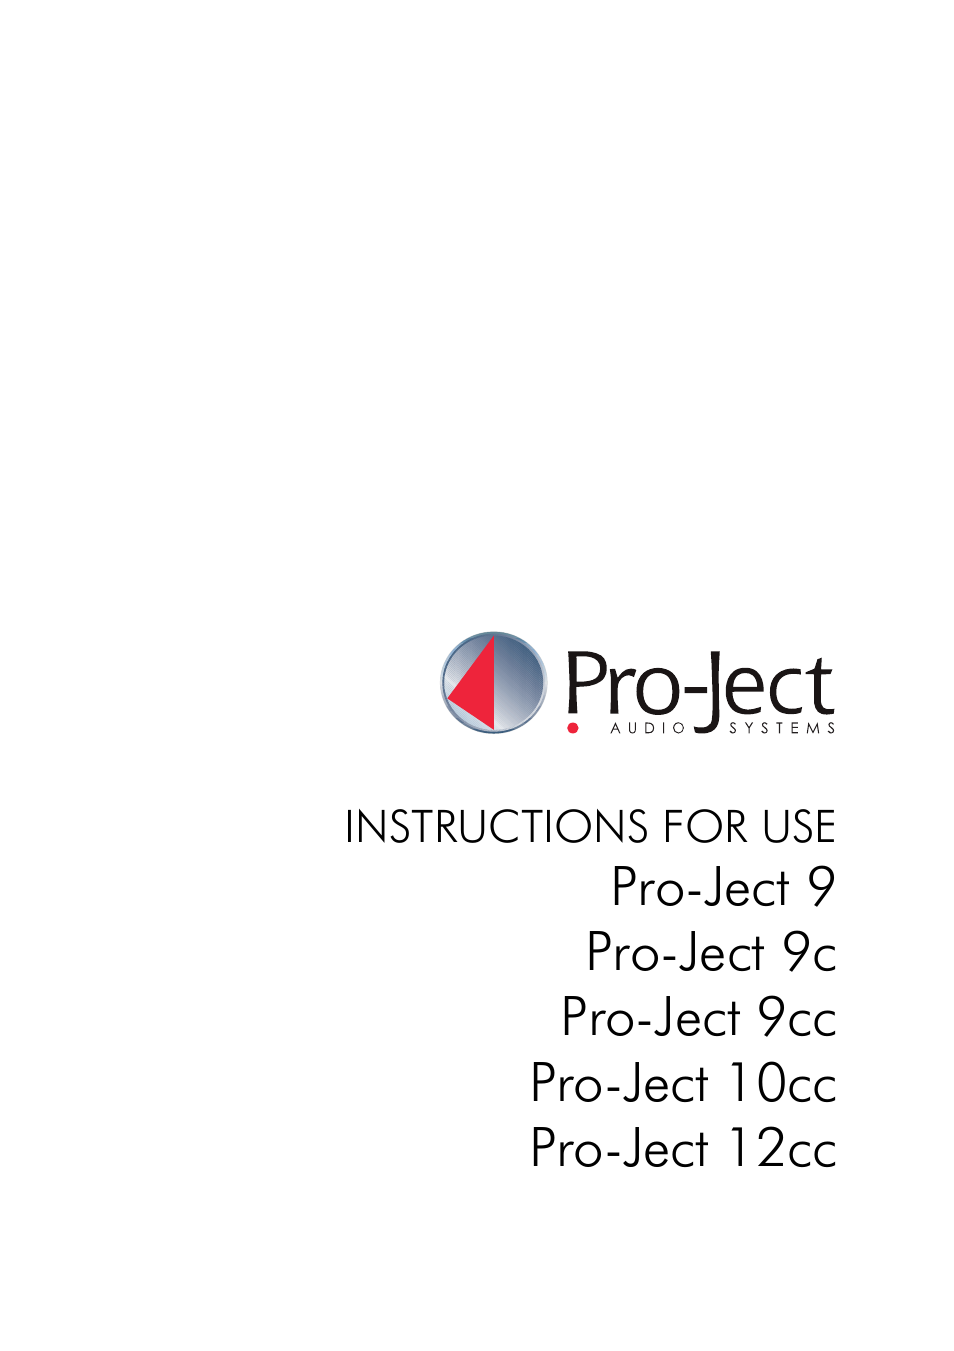 Pro-Ject 10cc